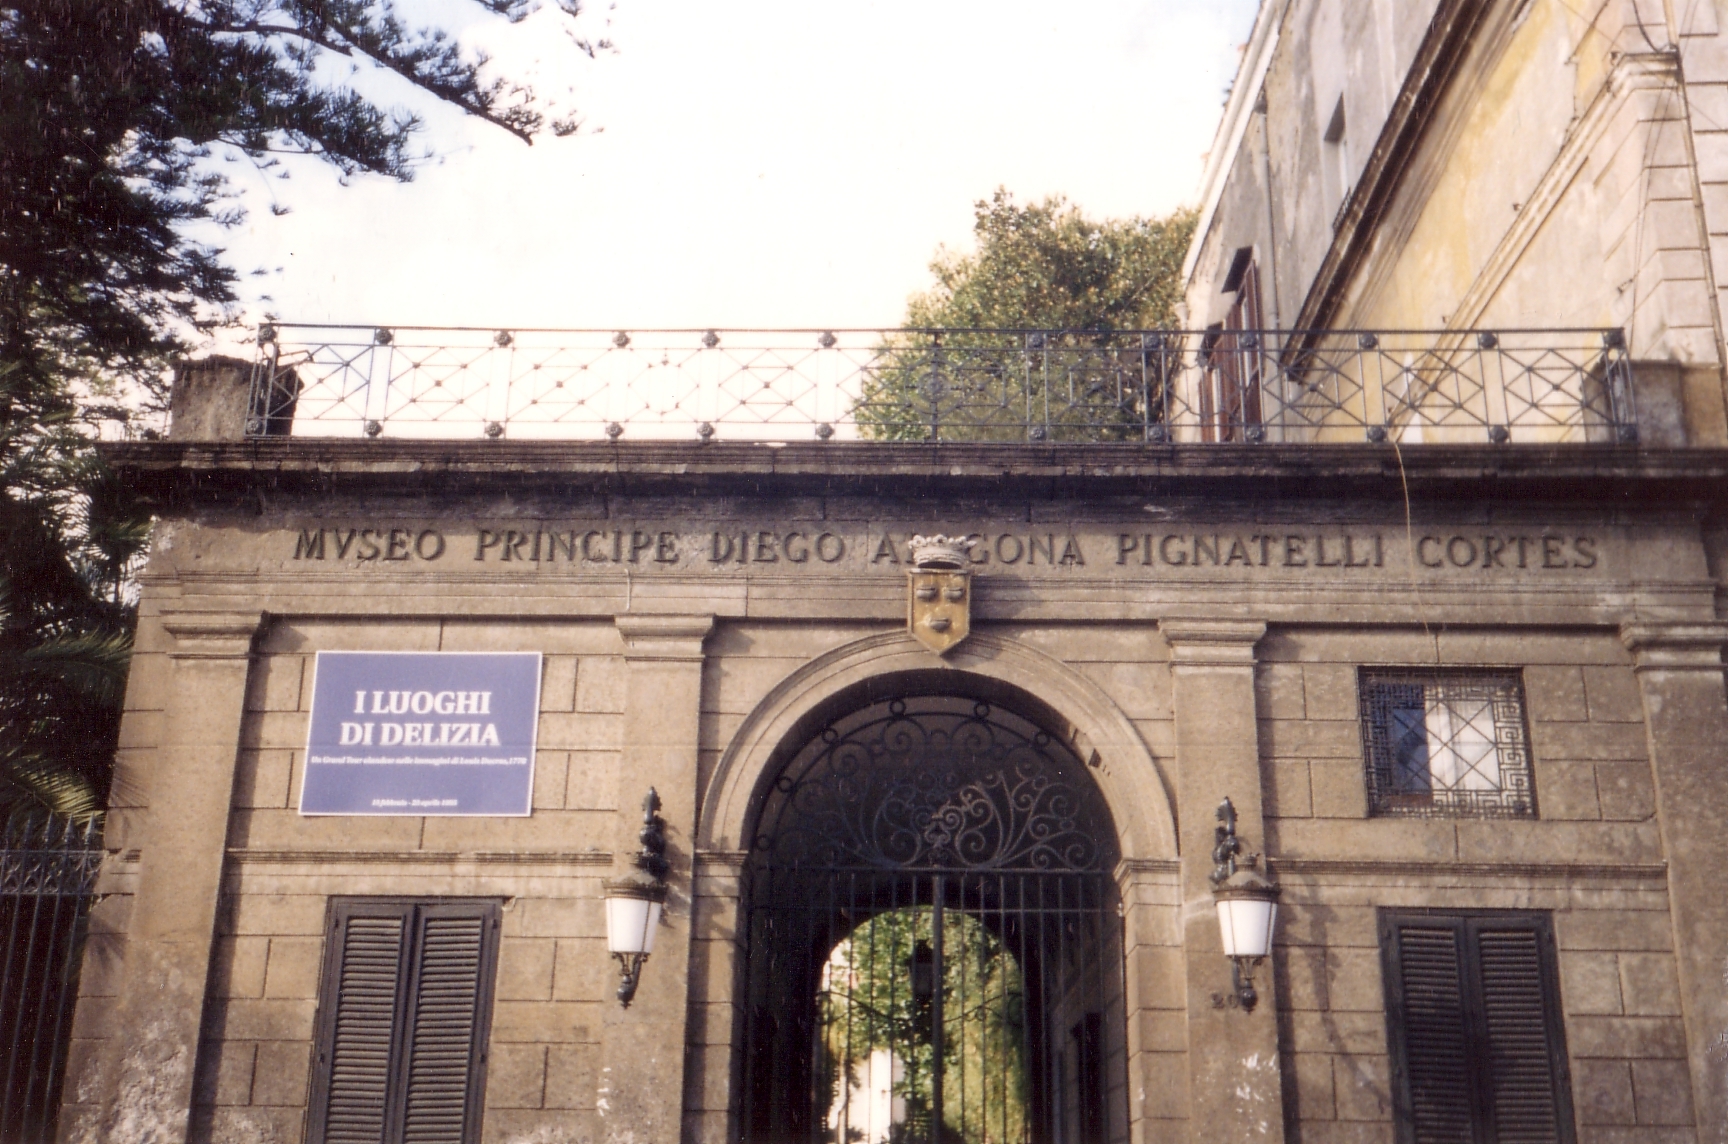 Villa e Museo Pignatelli (villa, nobiliare) - Napoli (NA) 